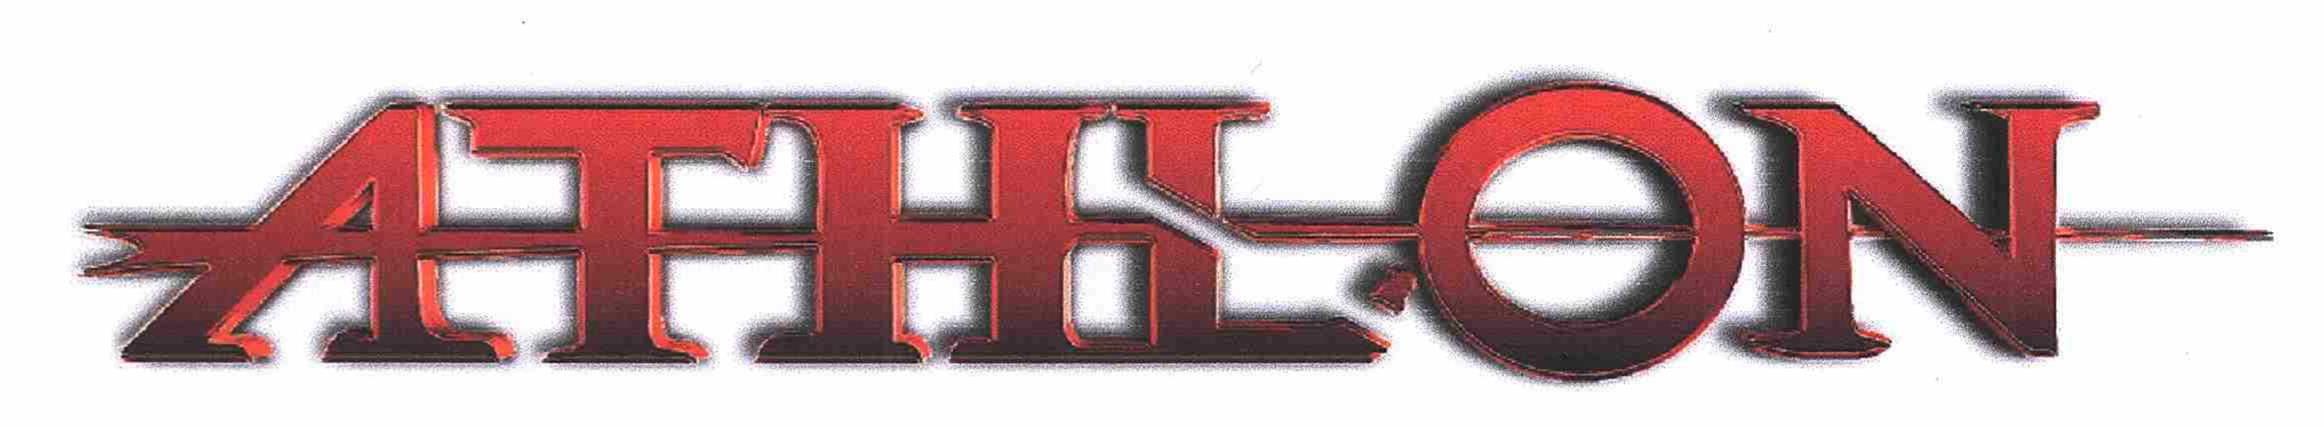 Trademark Logo ATHLON